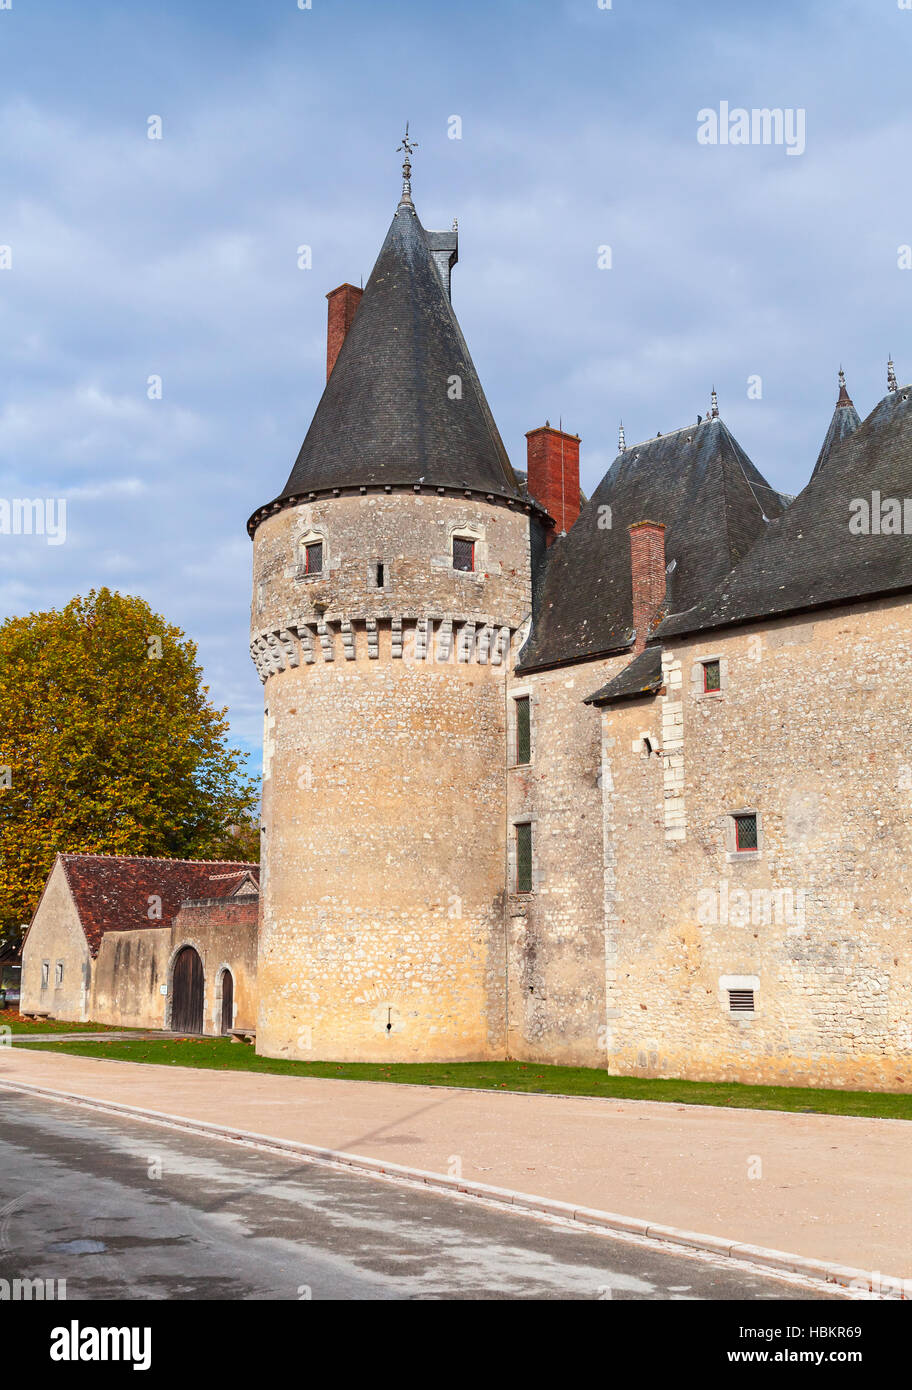 Fougeres-sur-Bievre, Francia - 6 Novembre 2016: Il Chateau de Fougeres-sur-Bievre, medievale castello francese nella Valle della Loira. Fu costruita nel XV secolo Foto Stock